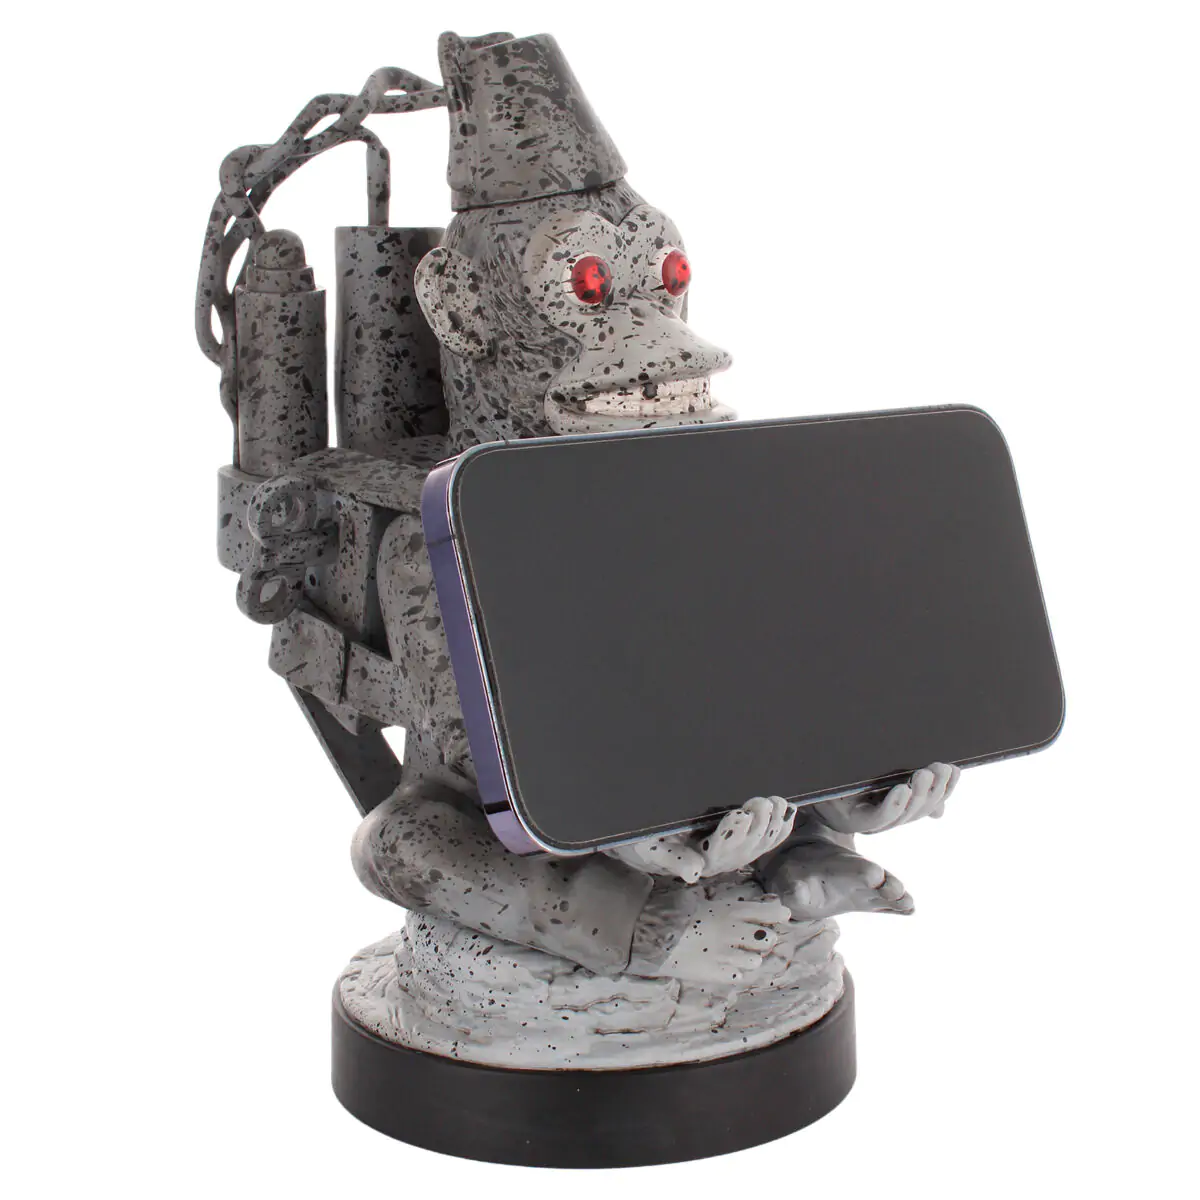 Call of Duty Toasted Monkey Bomb figura kontroller/telefon tartó Cable Guy figura 21cm termékfotó